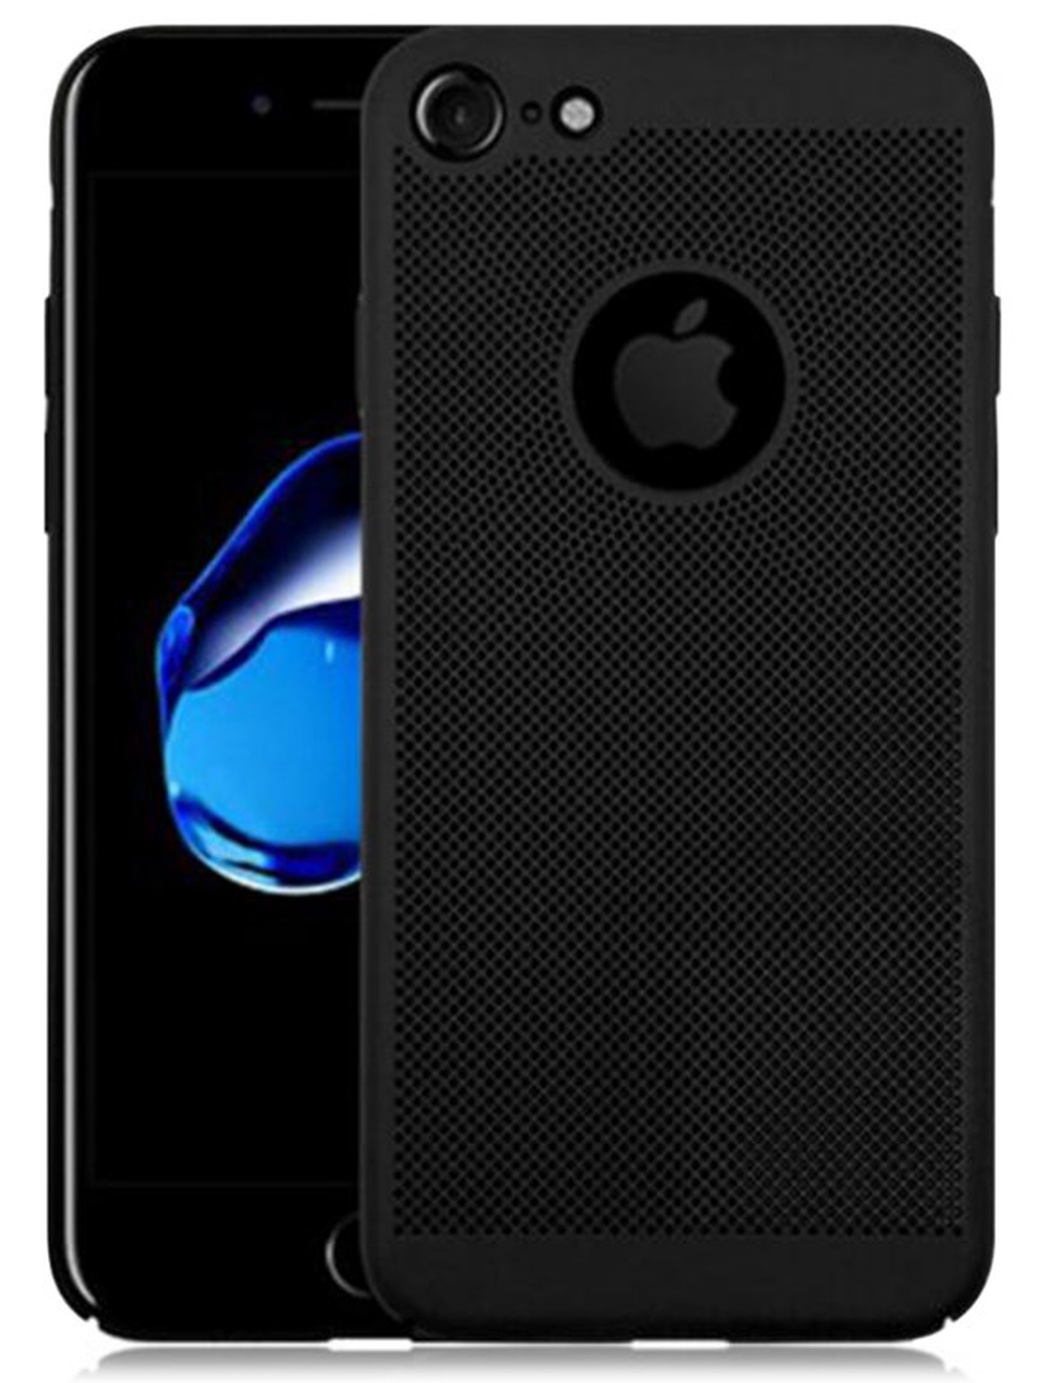 Ультратонкий чехол-накладка с микропорами для охлаждения для iPhone 7, черный фото